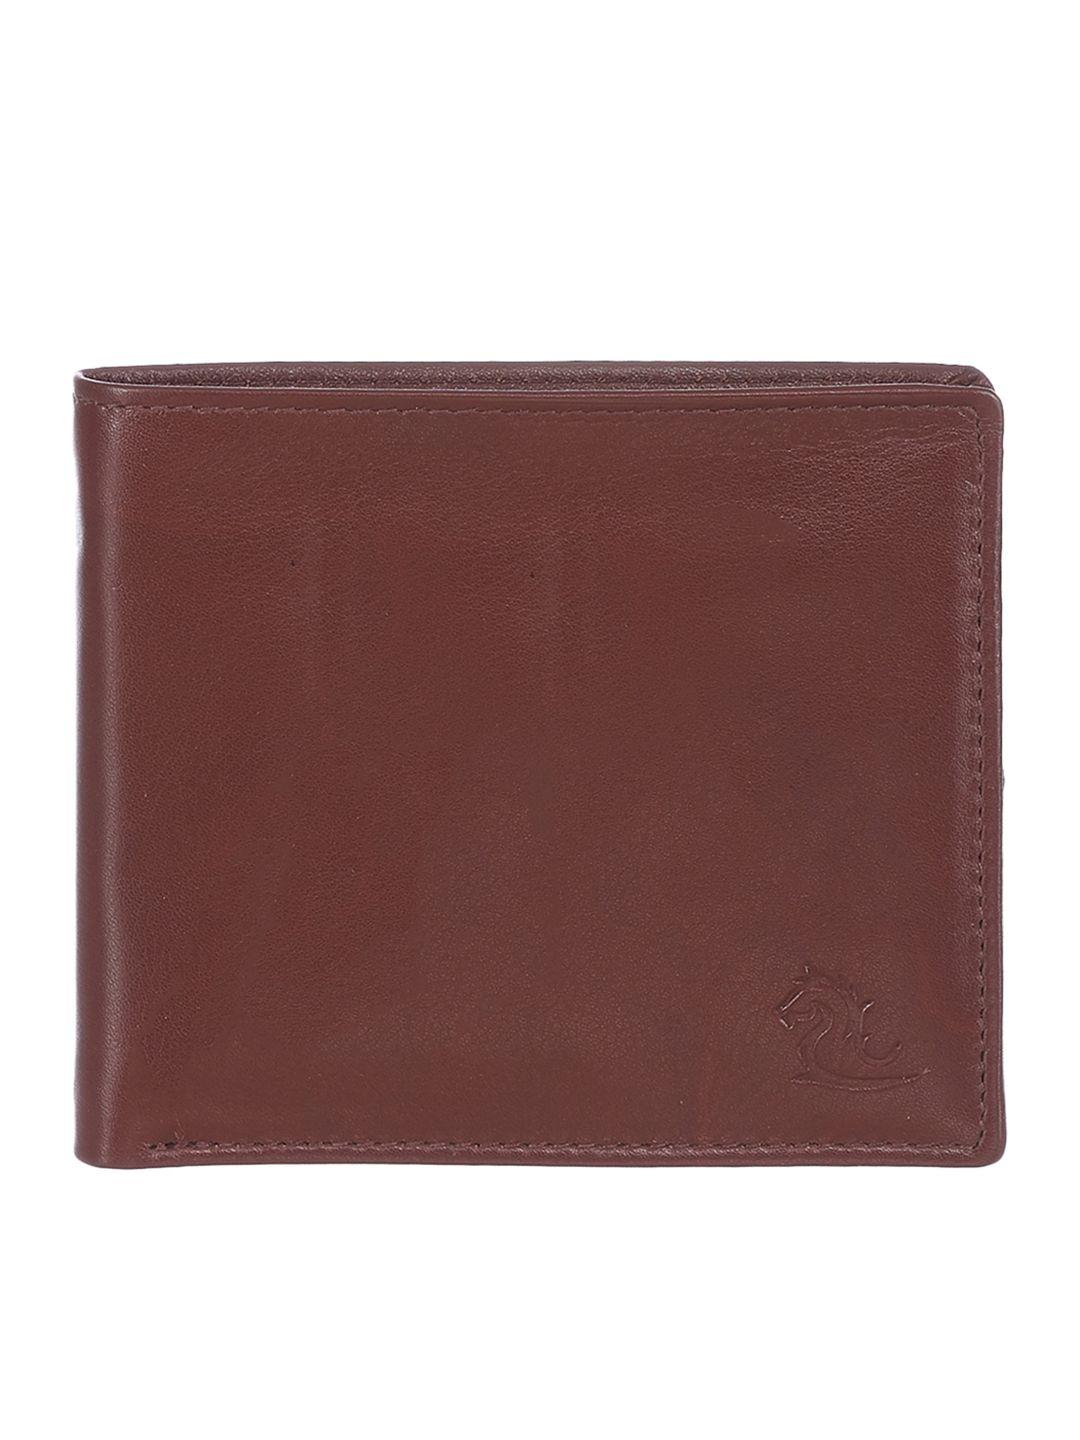 kara men brown leather wallet